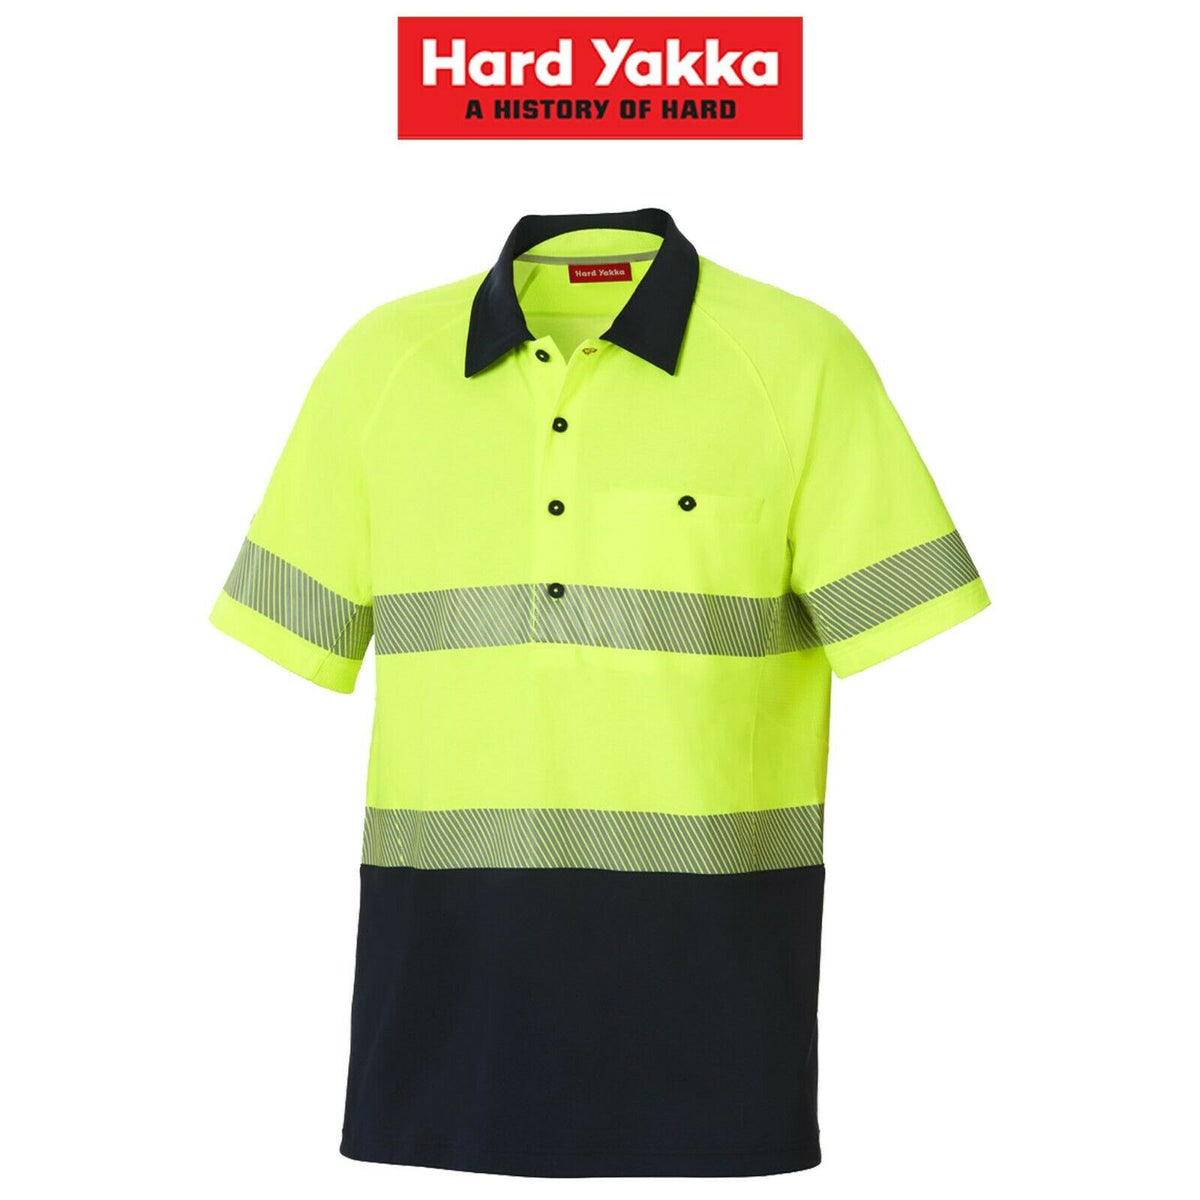 Hard Yakka Koolgear Hi-Vis Short Sleeve Polo Light 2 Tone Work Shirt Y11383